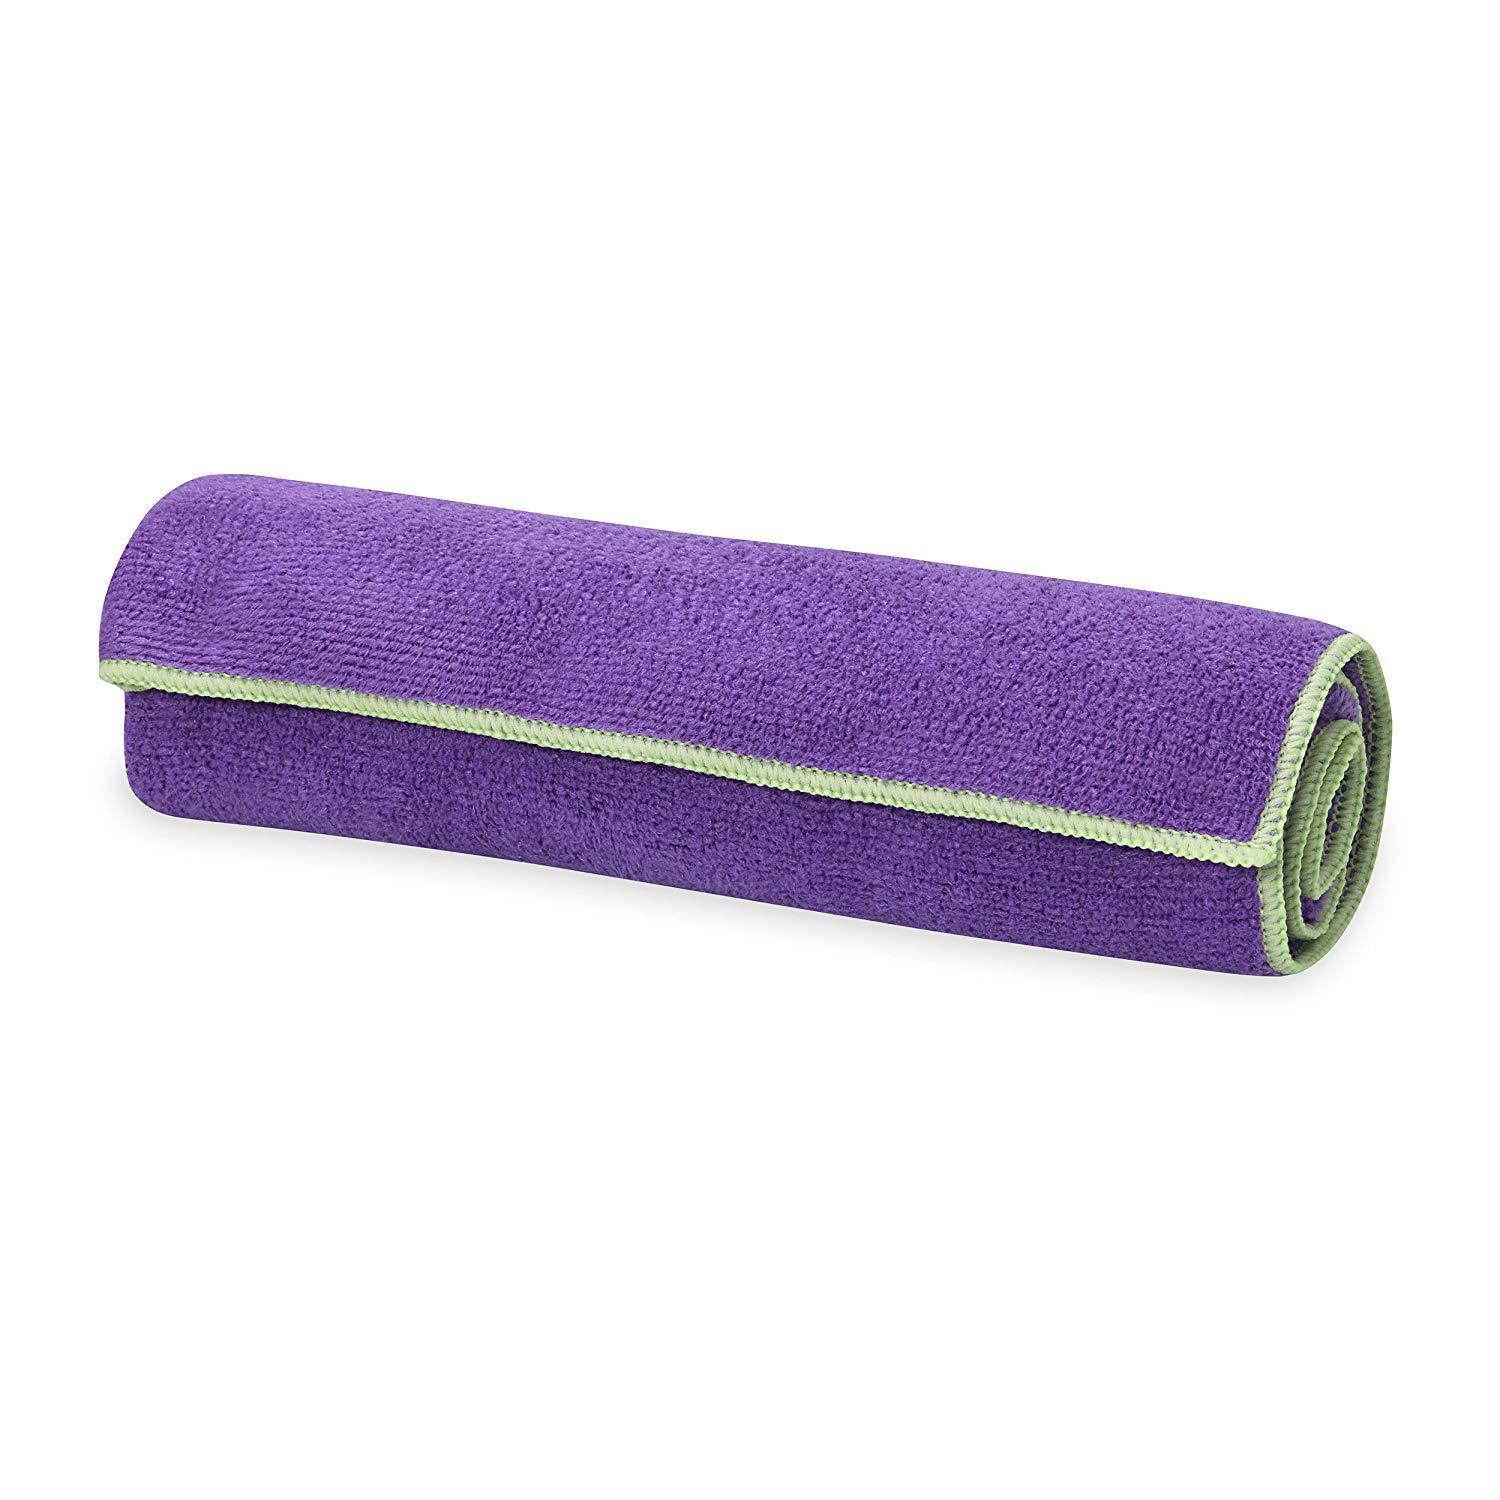 Gaiam Yoga Mat Hand Towel Microfiber Purple